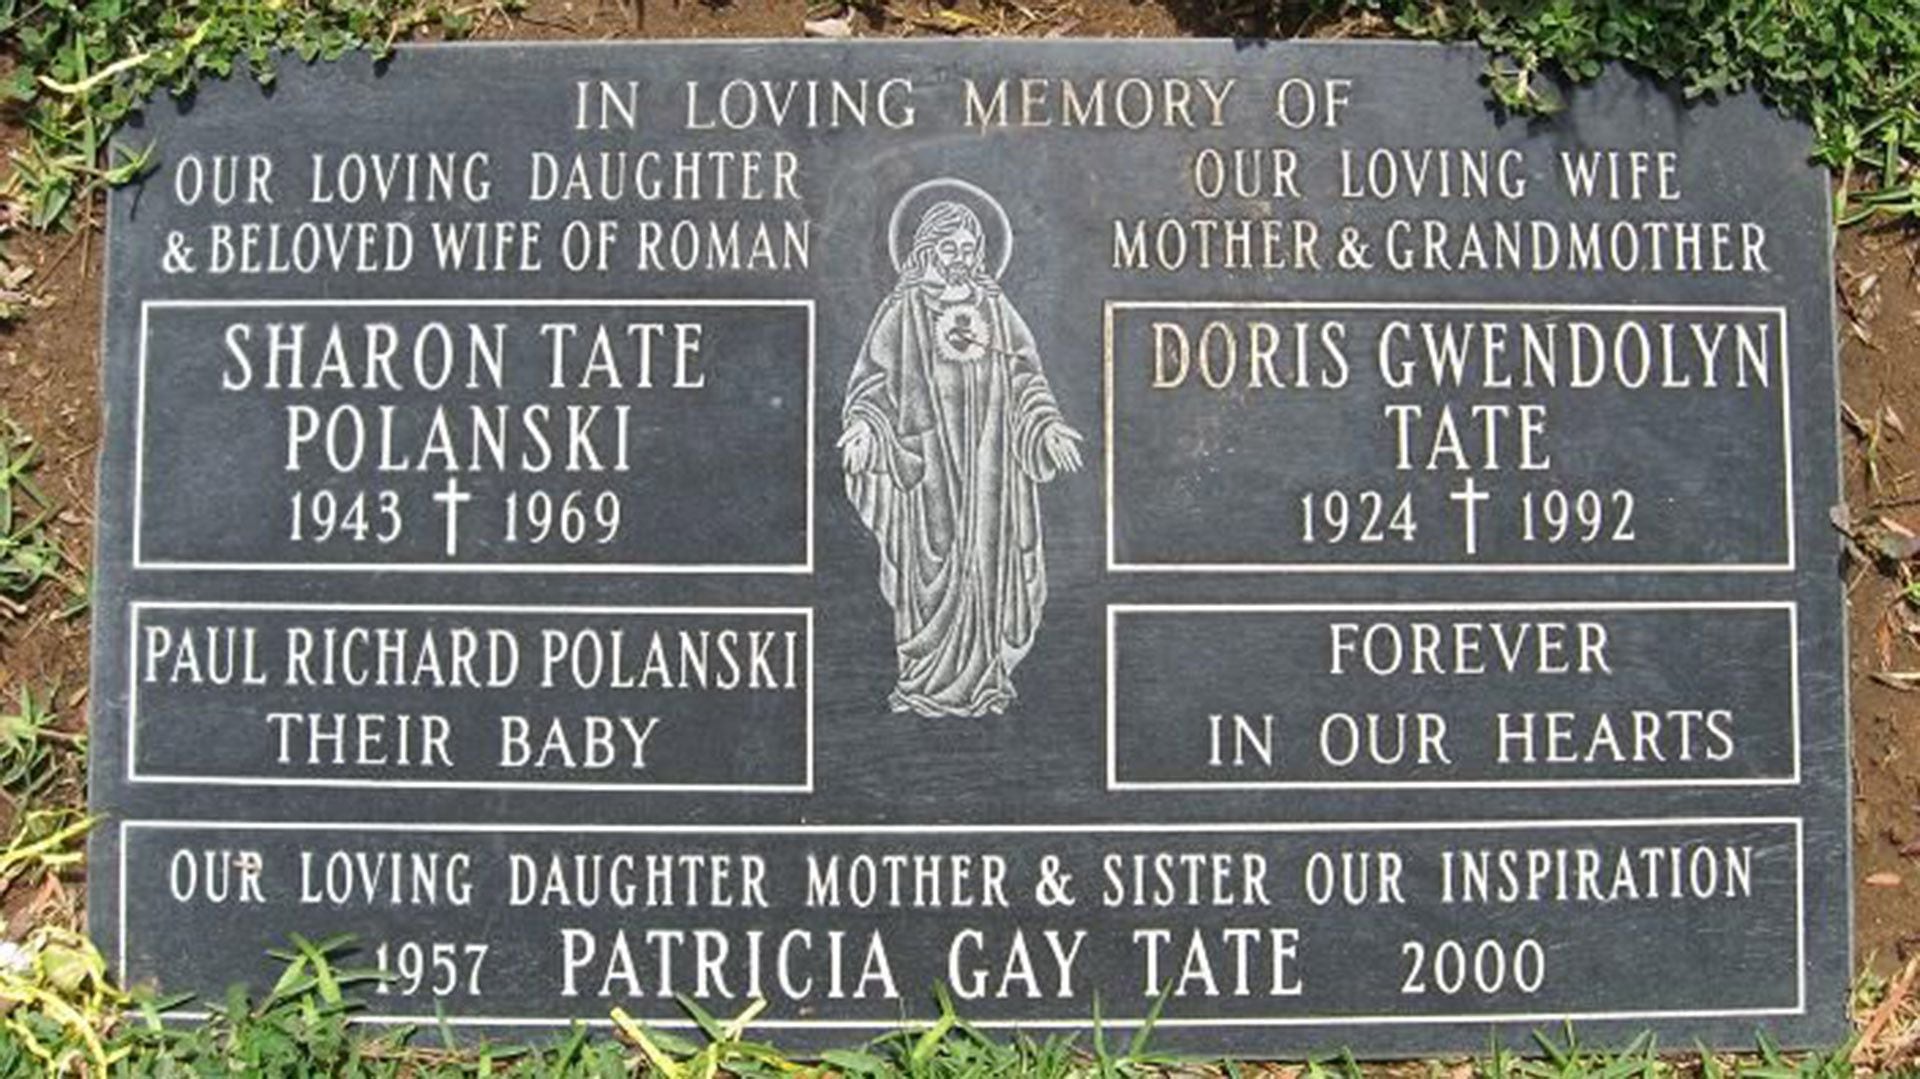 La placa que recuerda a Sharon Tate y a su hijo nonato Paul Richard Polanski. La actriz estaba embarazada de ocho meses cuando fue asesinada